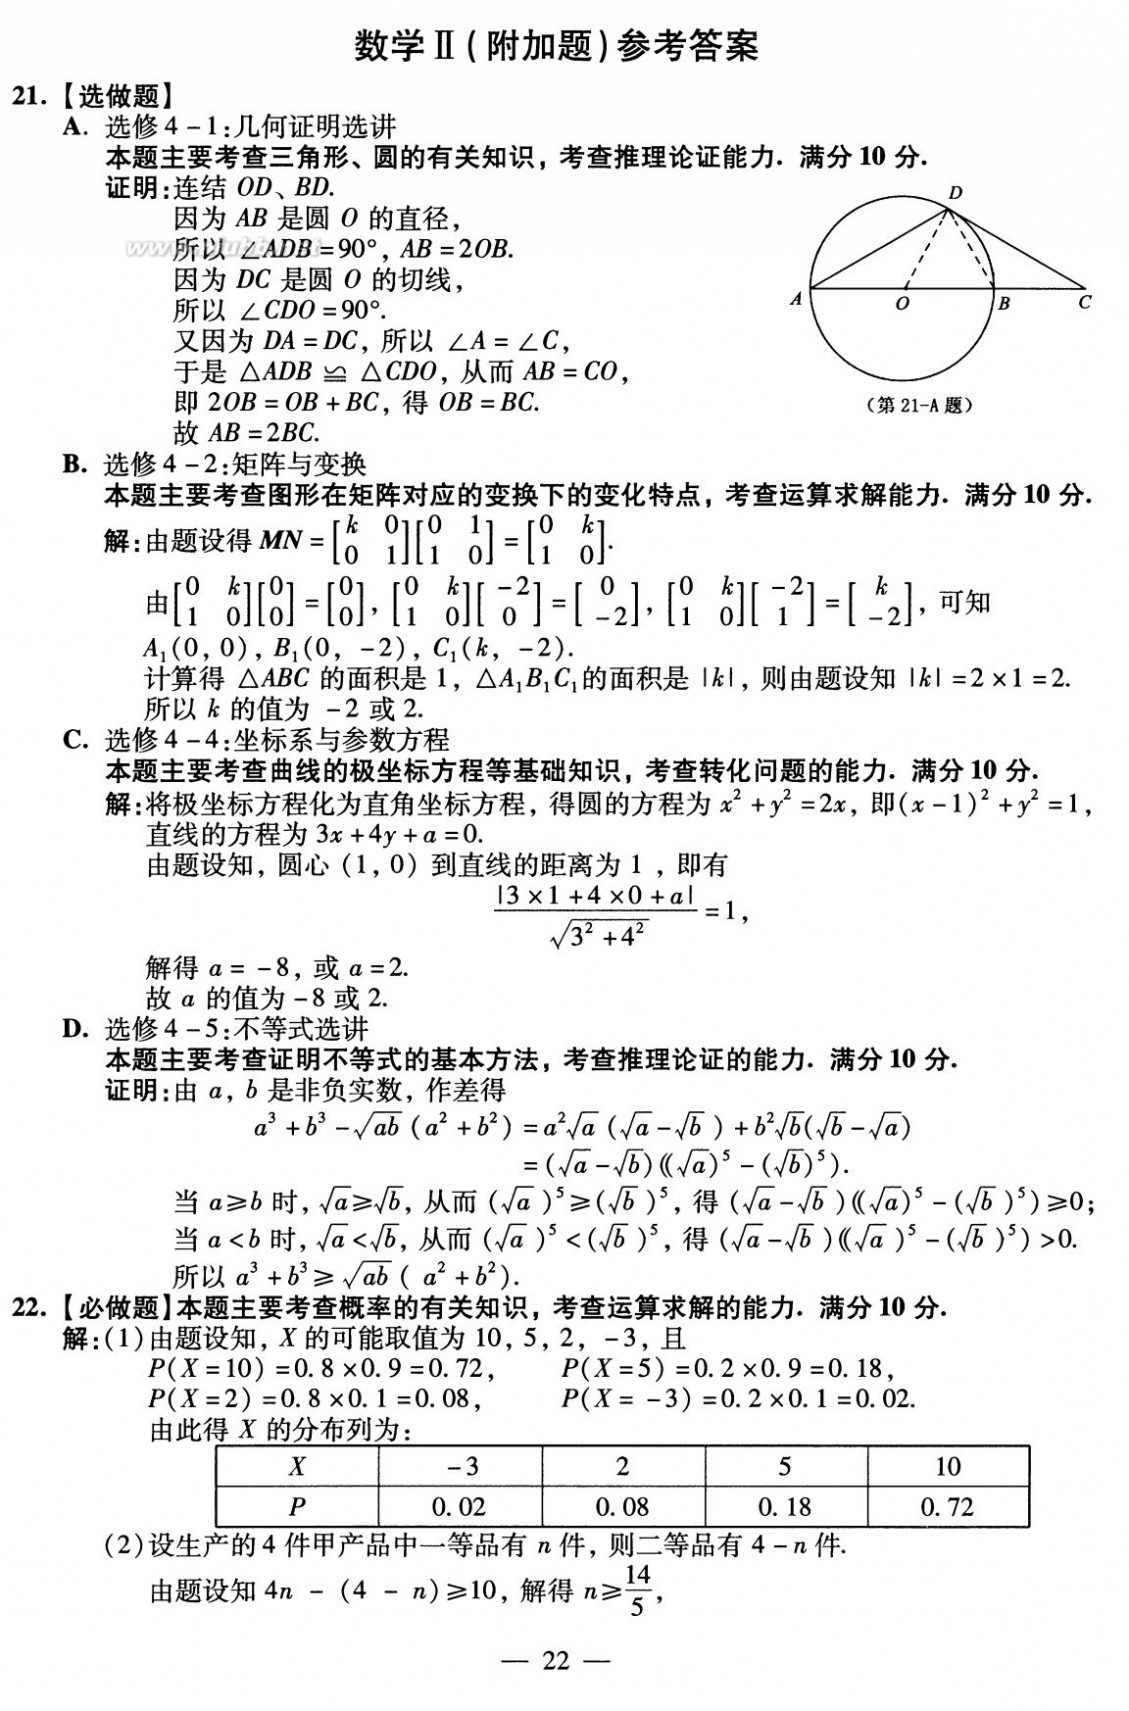 2010江苏数学高考 2010年江苏高考数学试卷及参考答案